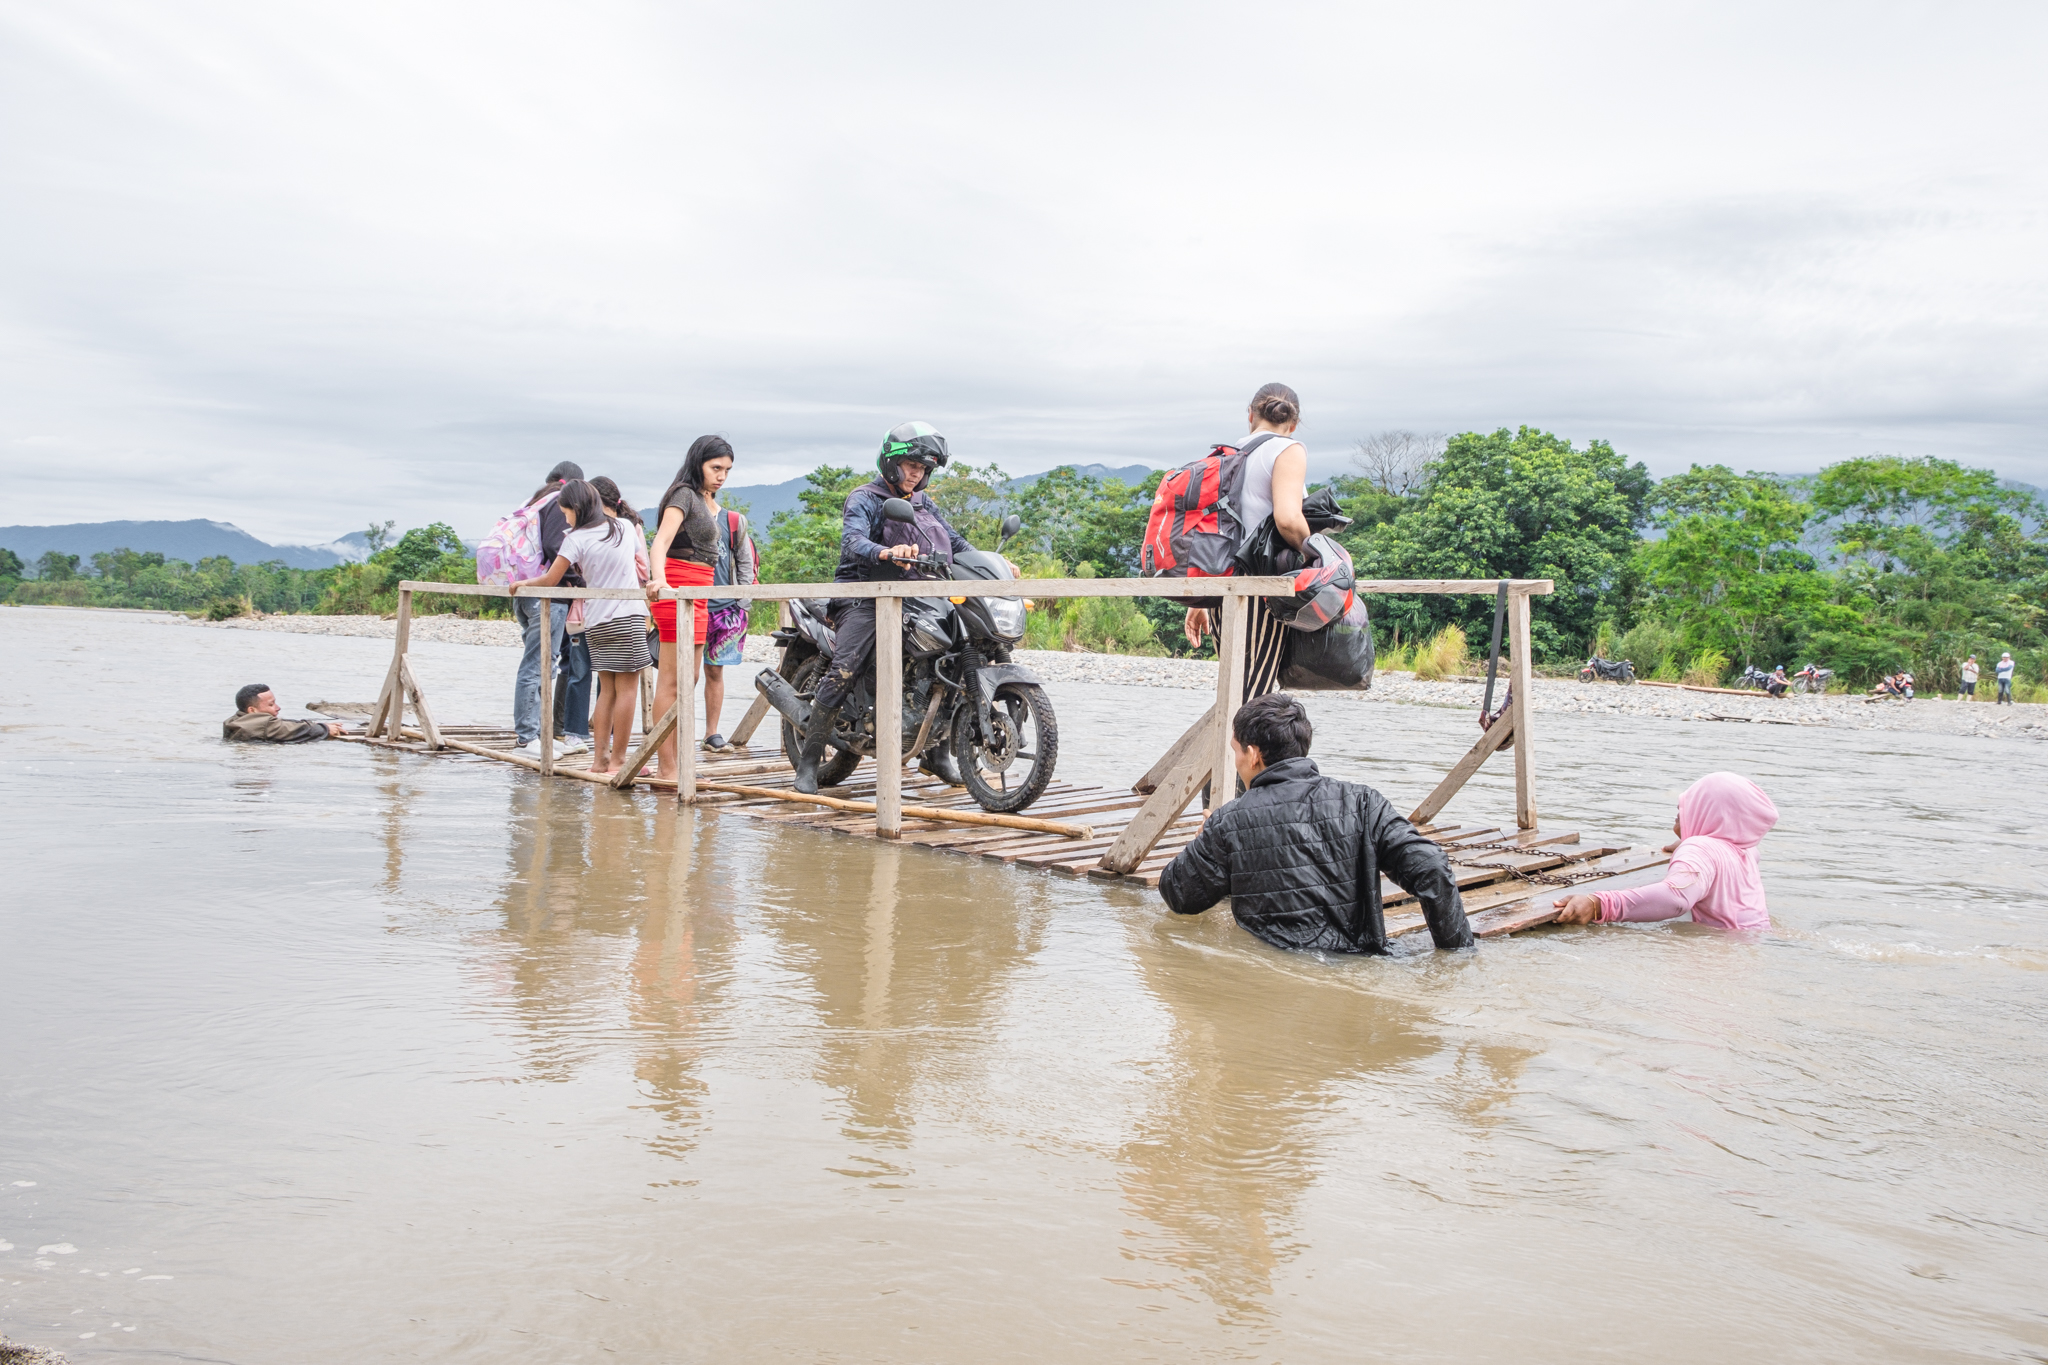 Algunos habitantes locales ofrecen el servicio de cruzar el río Caquetá en planchones de madera para suplir la falta de puentes. Piamonte, Cauca. Foto: Sergio Alejandro Melgarejo.